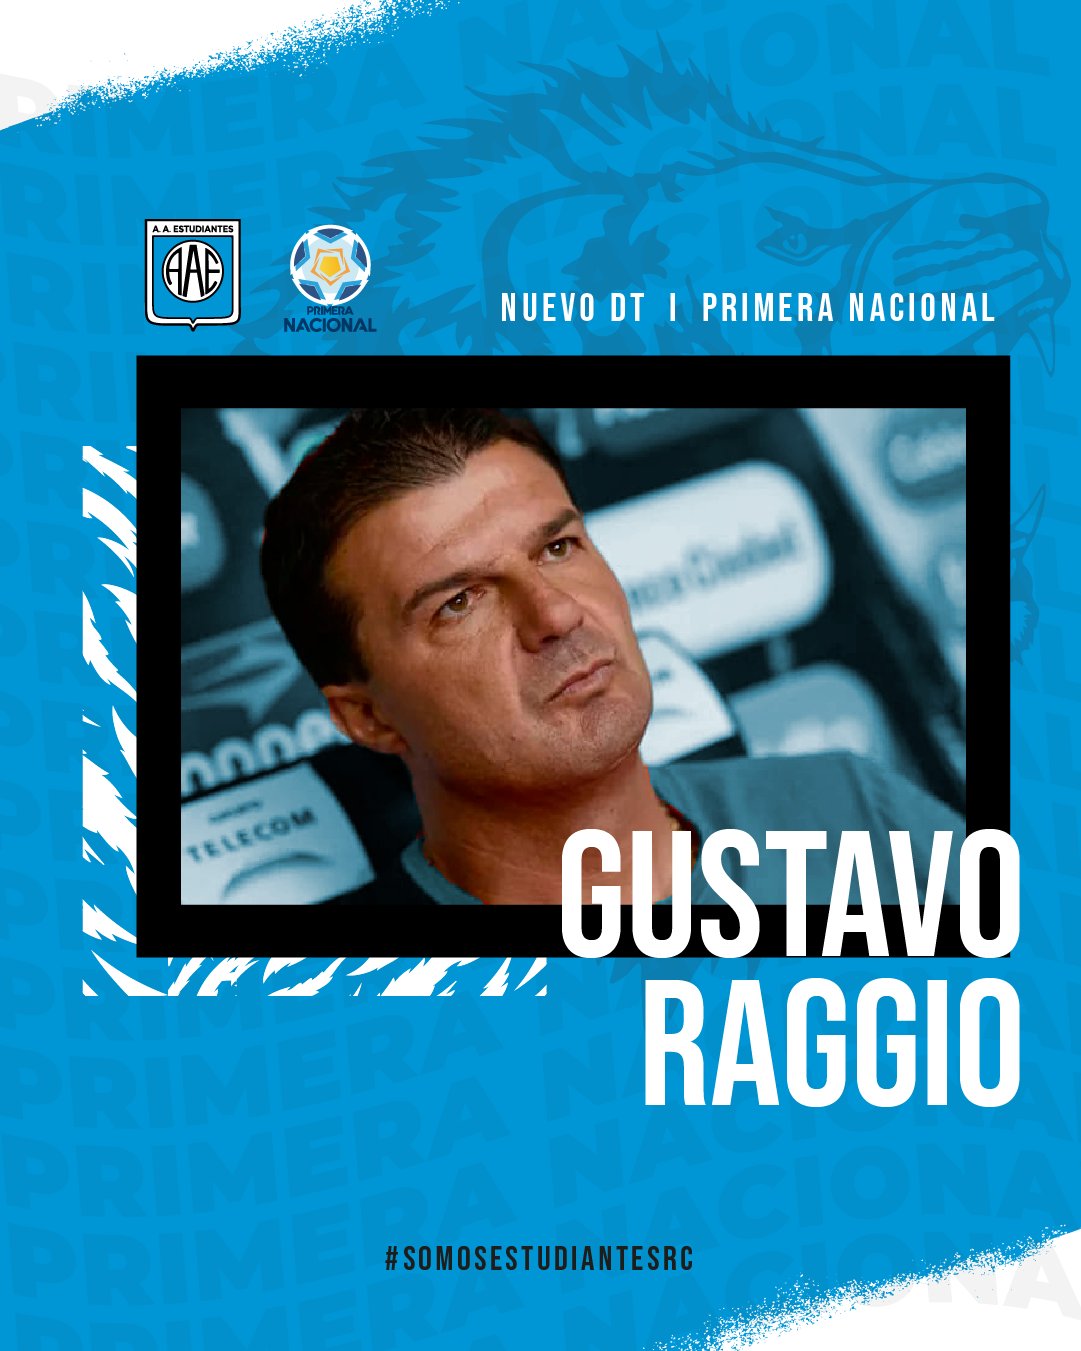 When did Raggio release “Los Pibes”?